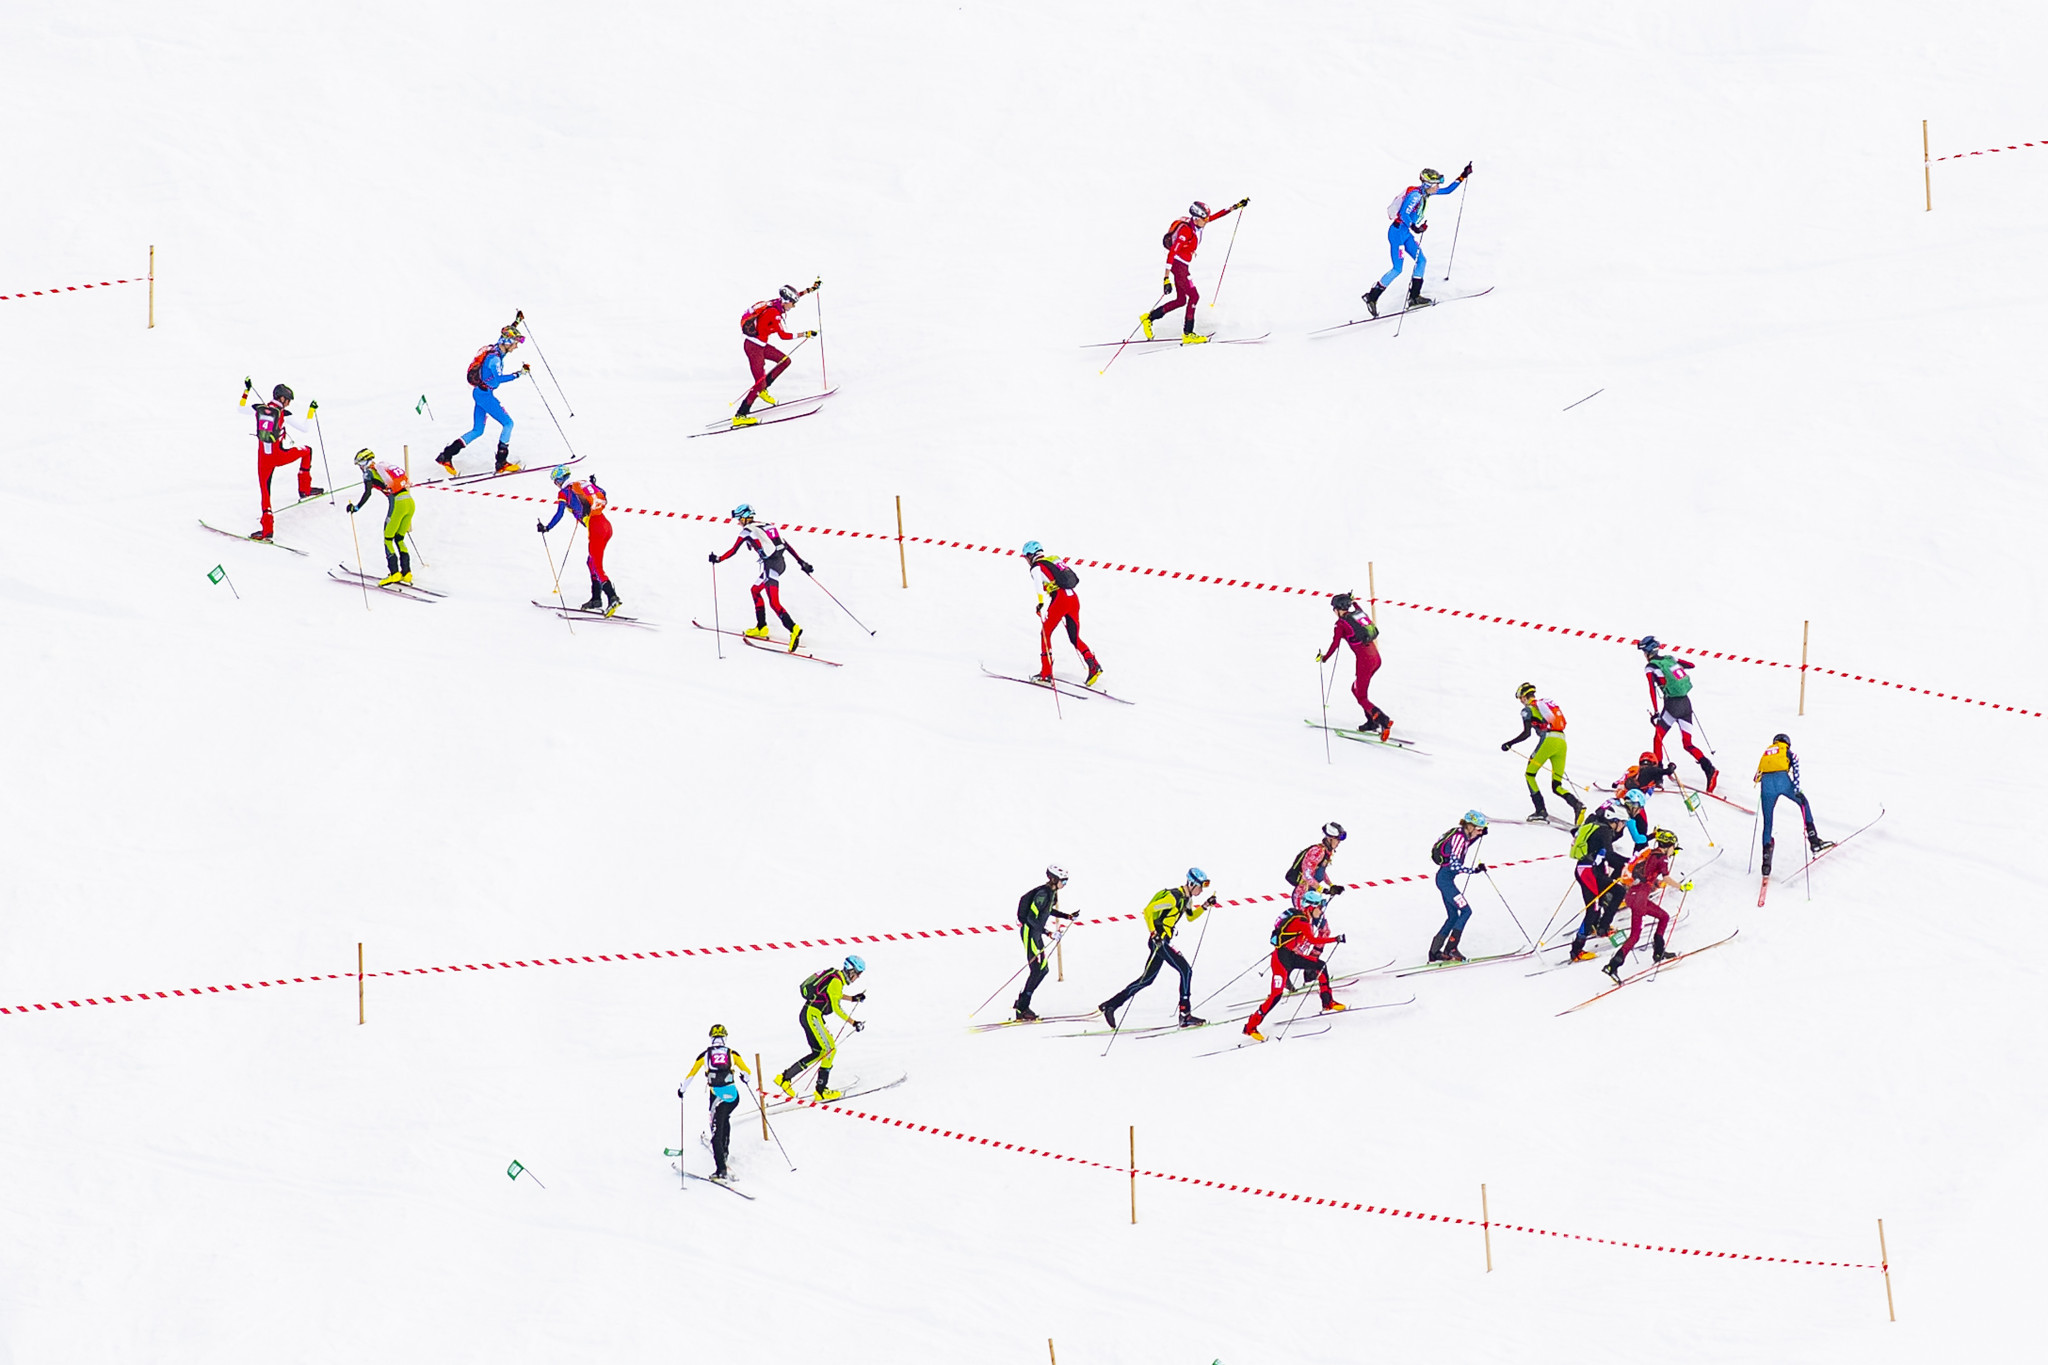 Ski mountaineering to make Asian Winter Games debut at Harbin 2025